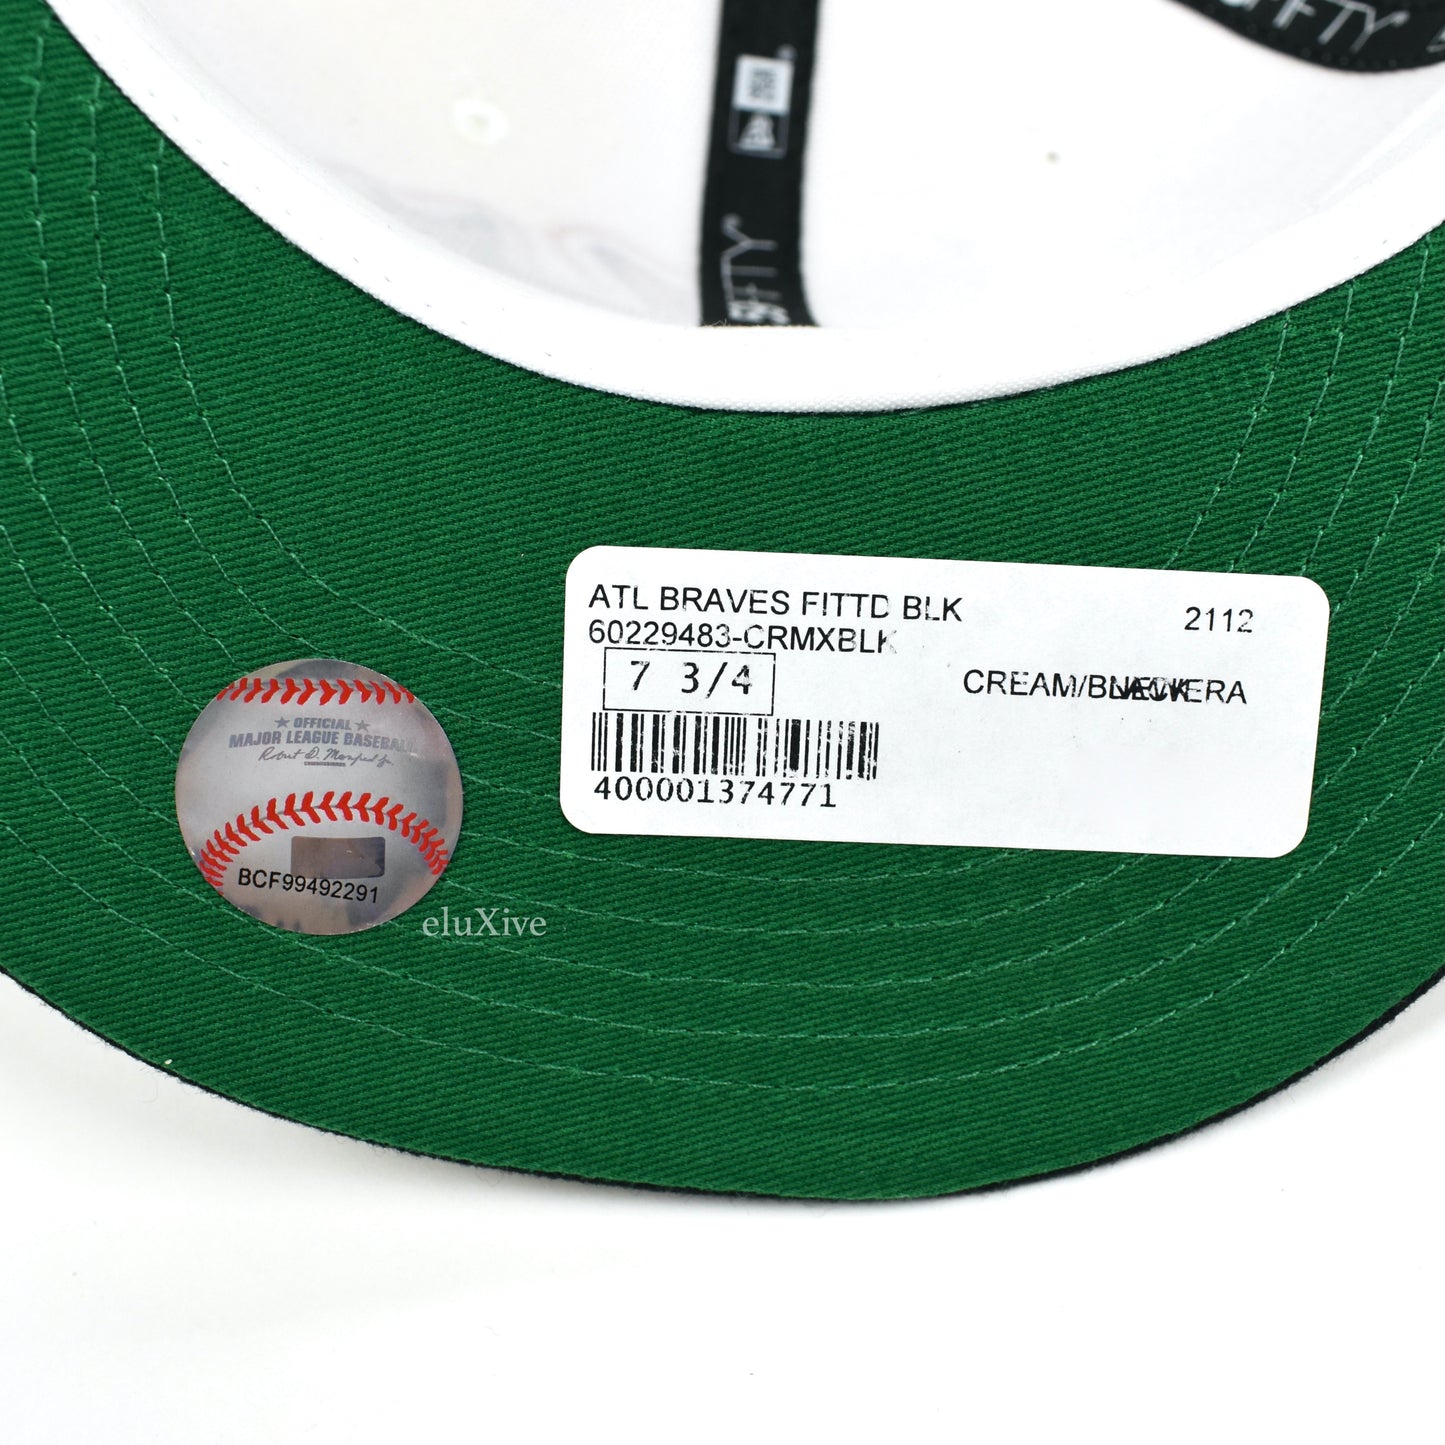 A Ma Maniere x New Era - Atlanta Braves Fitted Hat (Black Bill)